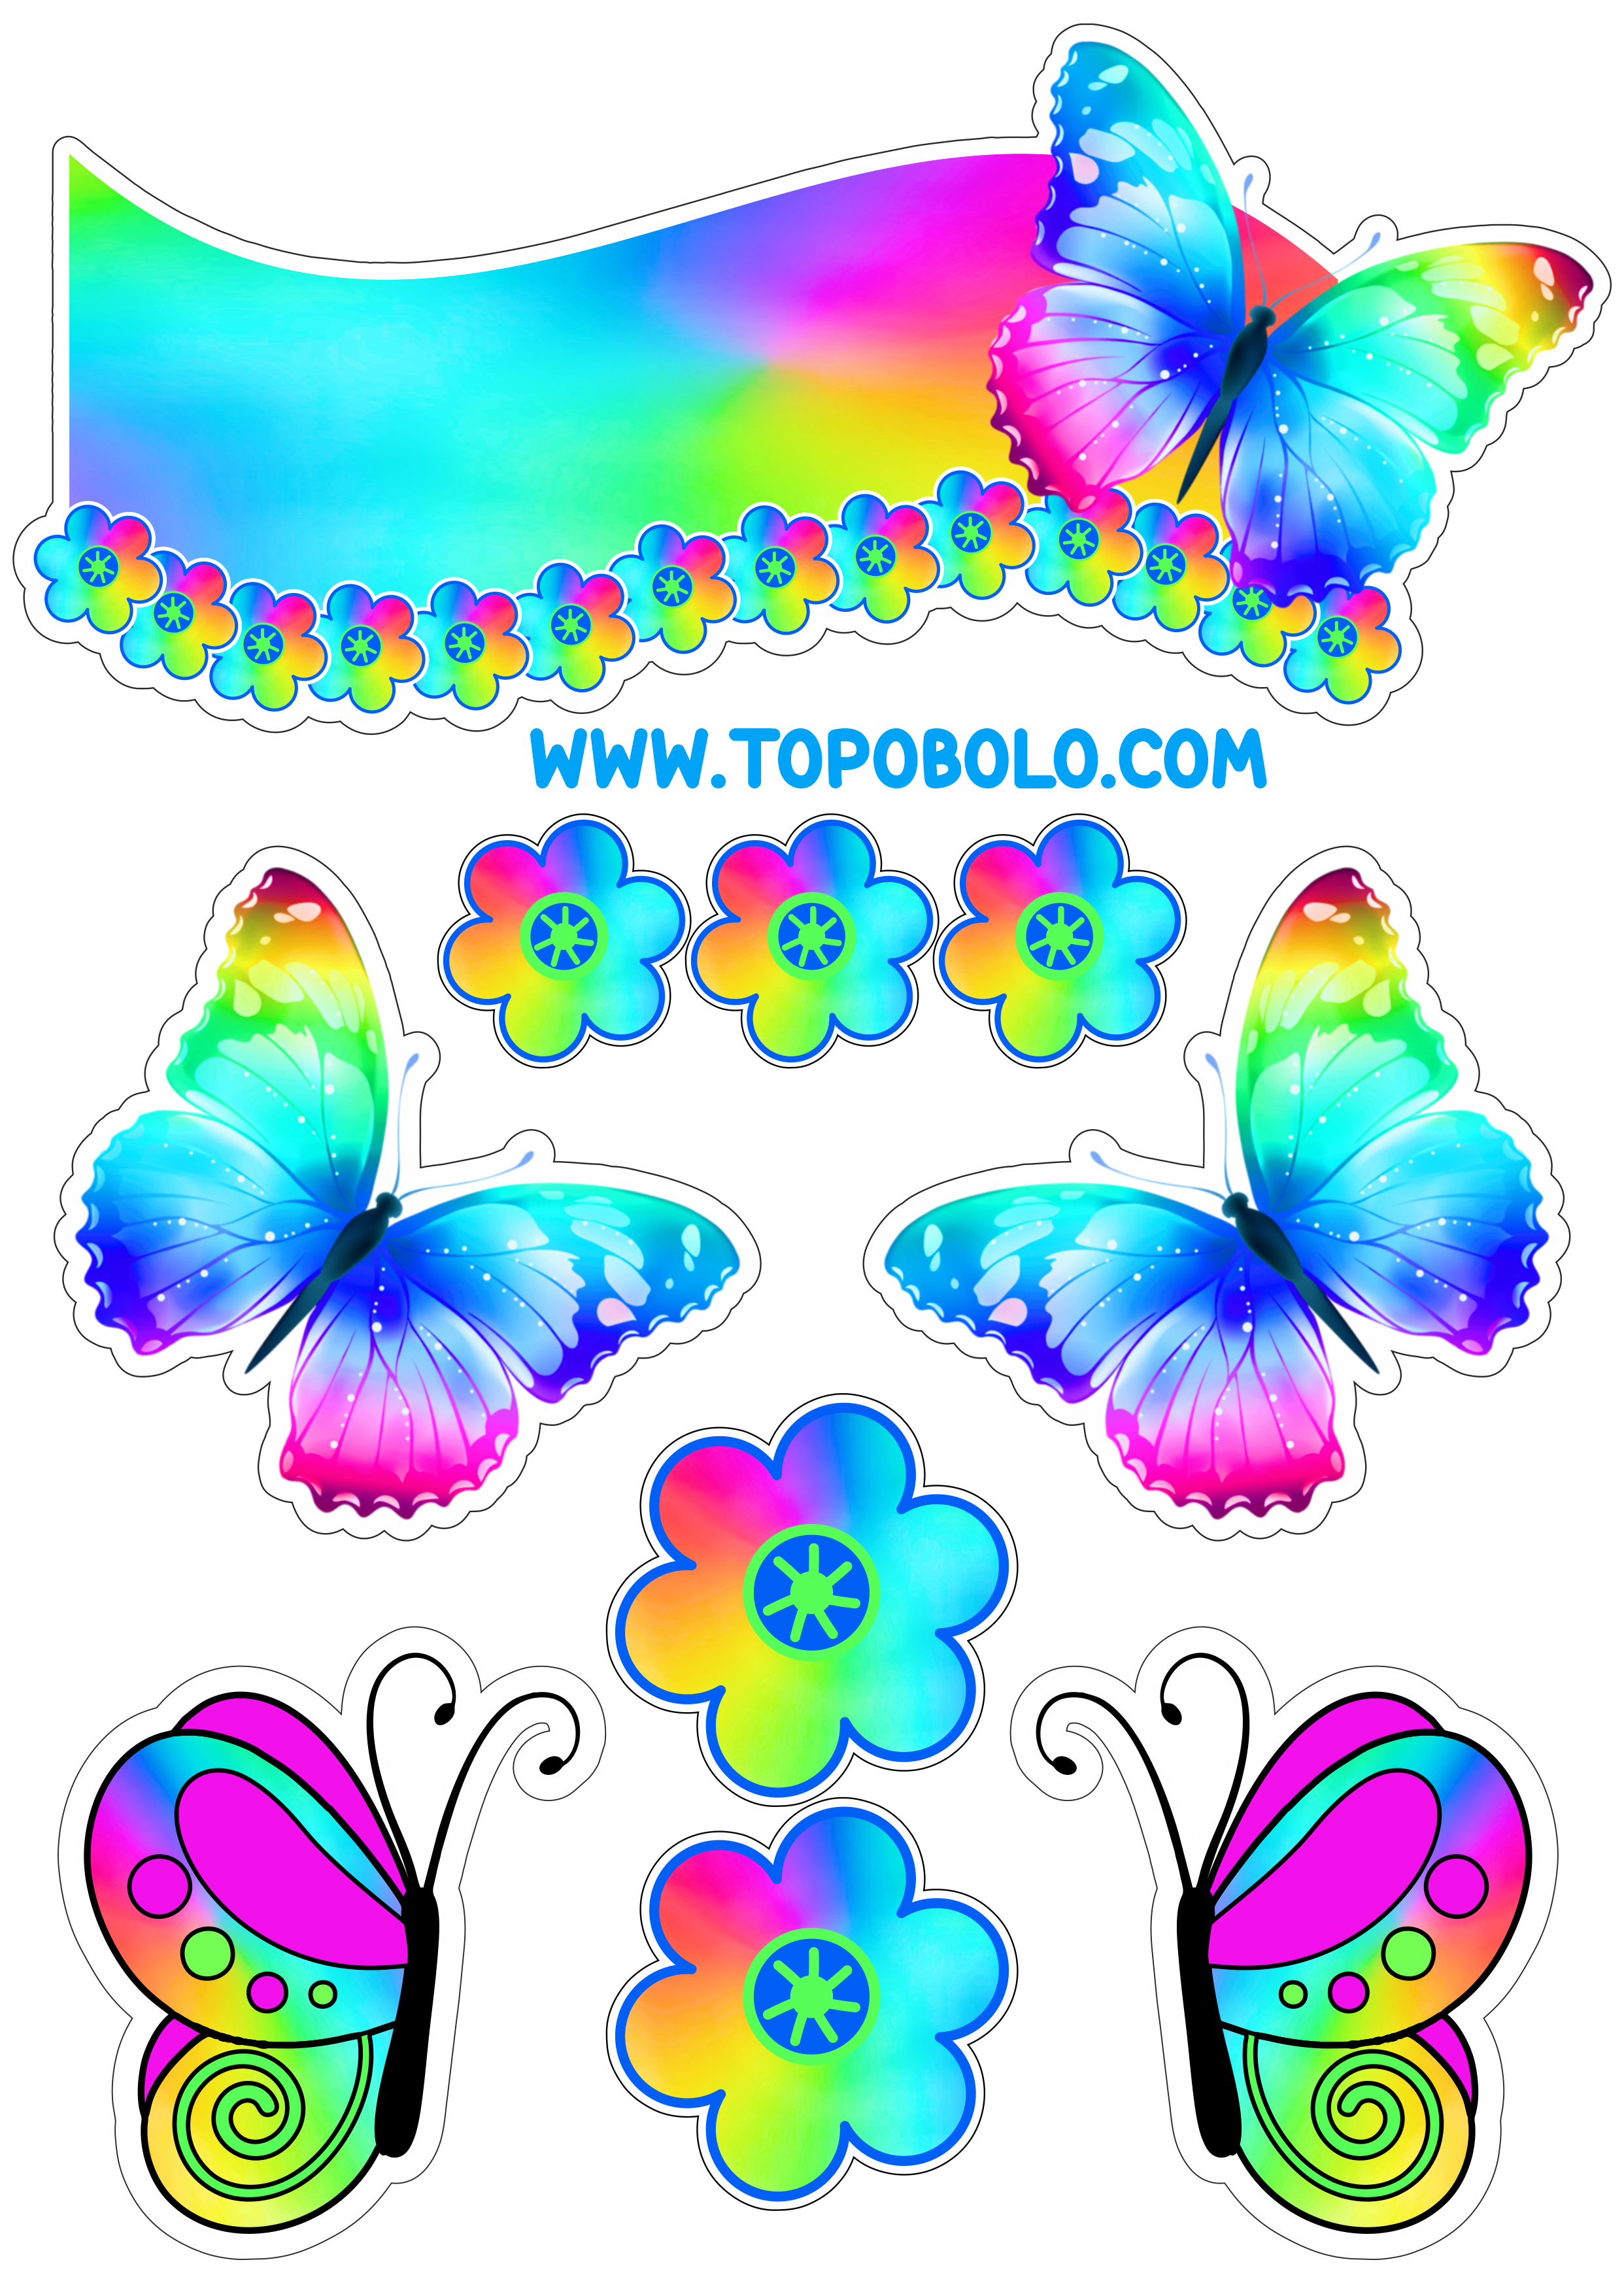 Topo de bolo para baixar borboletas e flores coloridas papelaria criativa com contorno para recorte festa pronta personalizados png